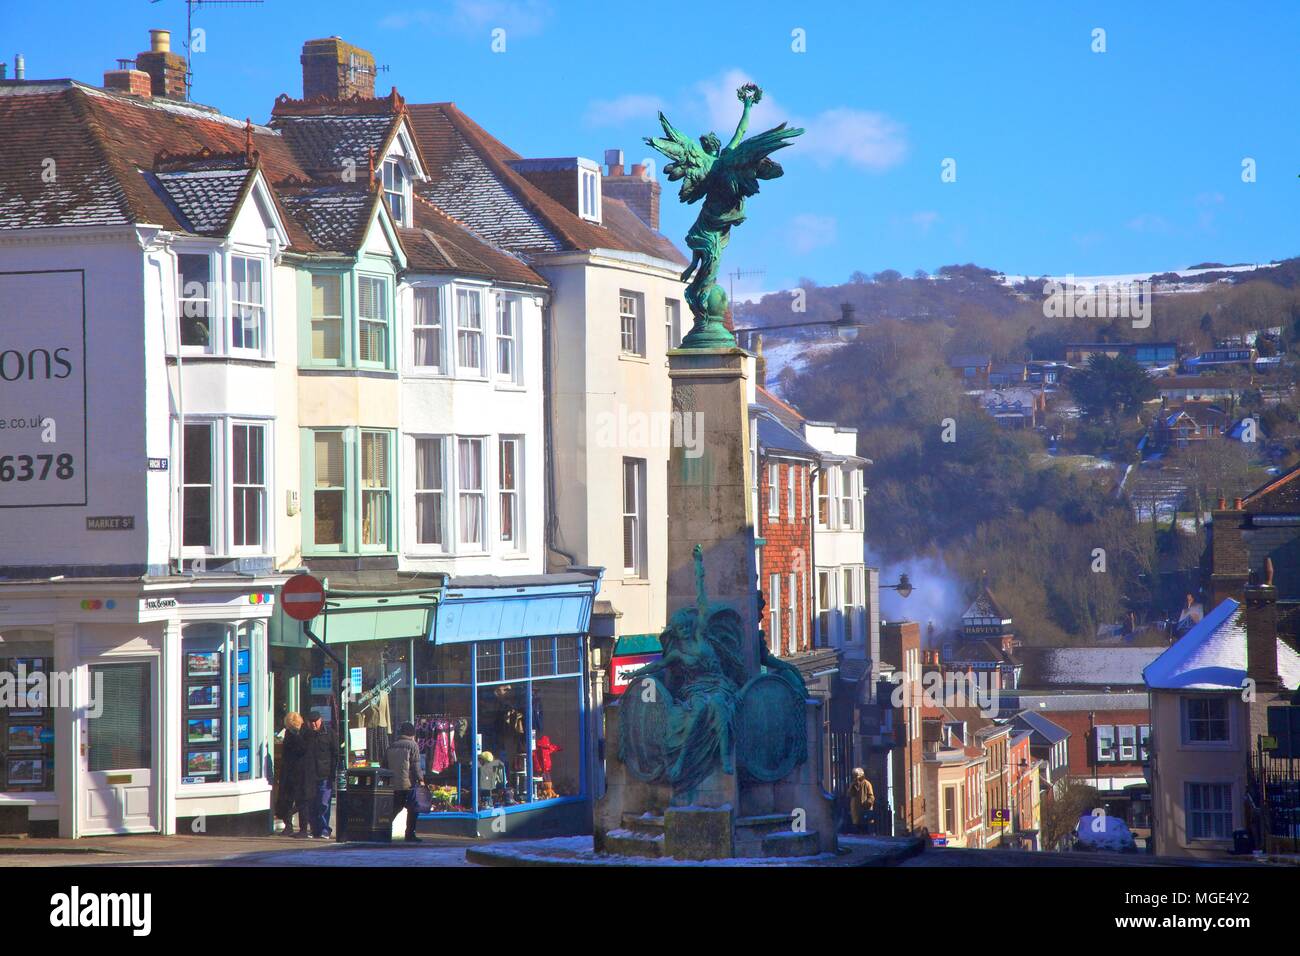 Scène d'hiver, grande rue avec War Memorial, Lewes, East Sussex, Royaume-Uni, Europe Banque D'Images